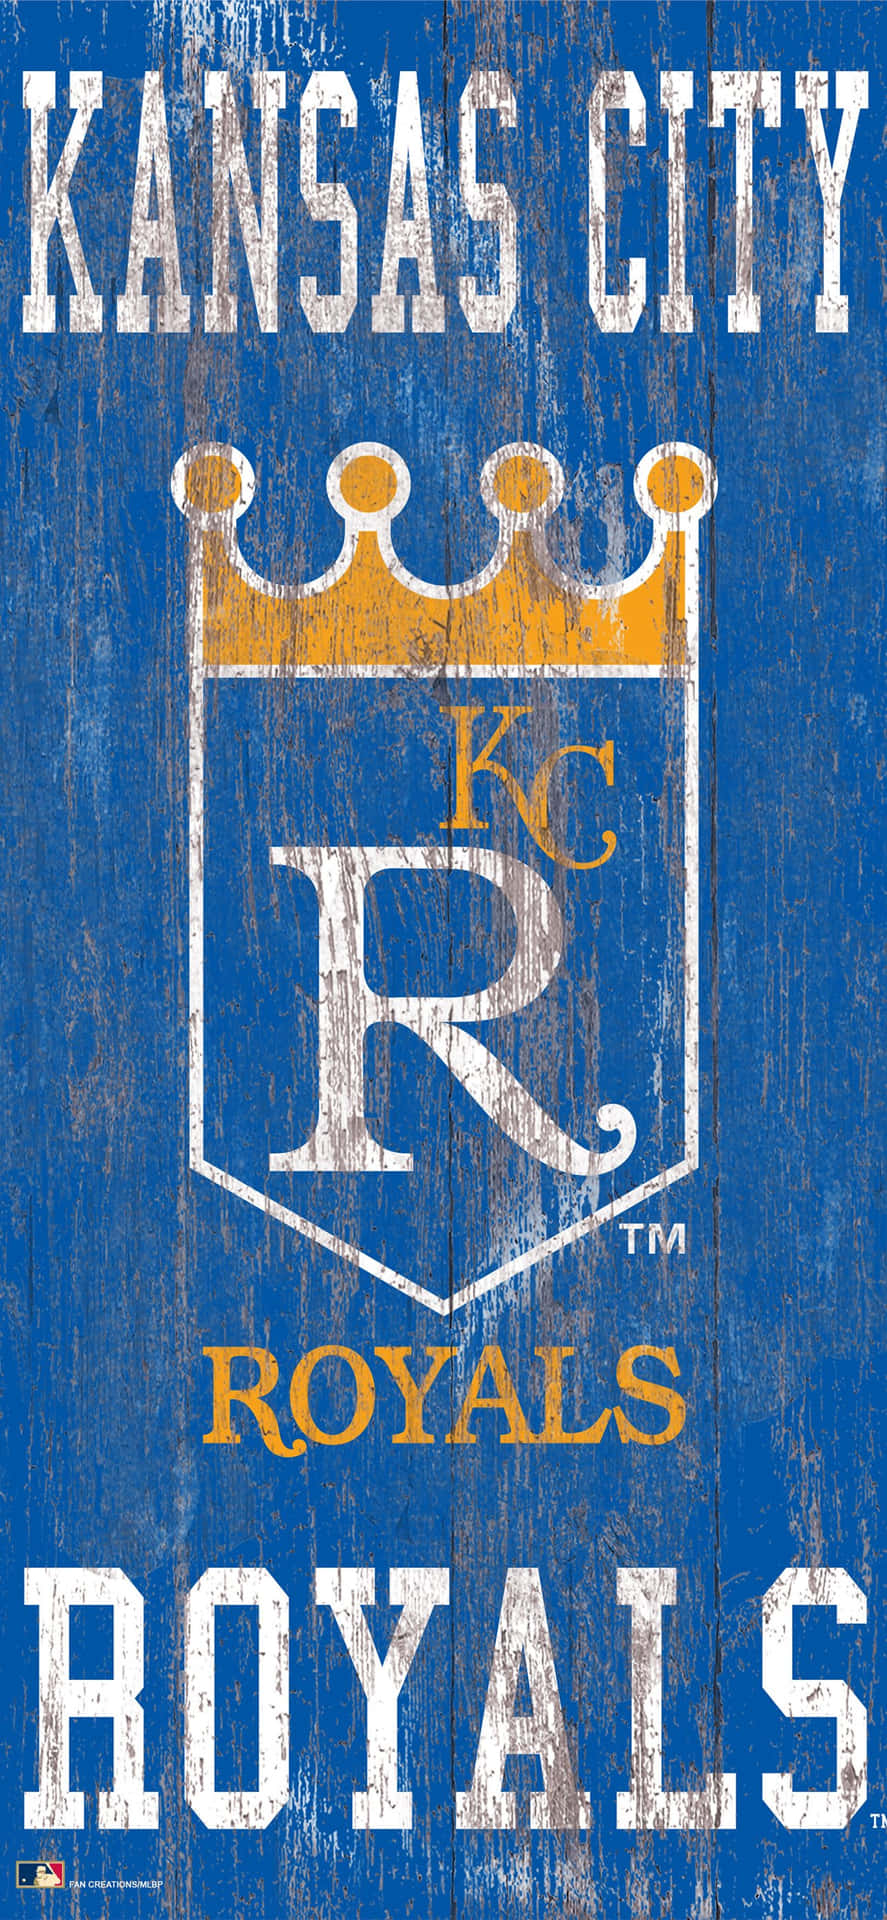 Attfira Royals Historiska Seger I 2015 World Series. Wallpaper